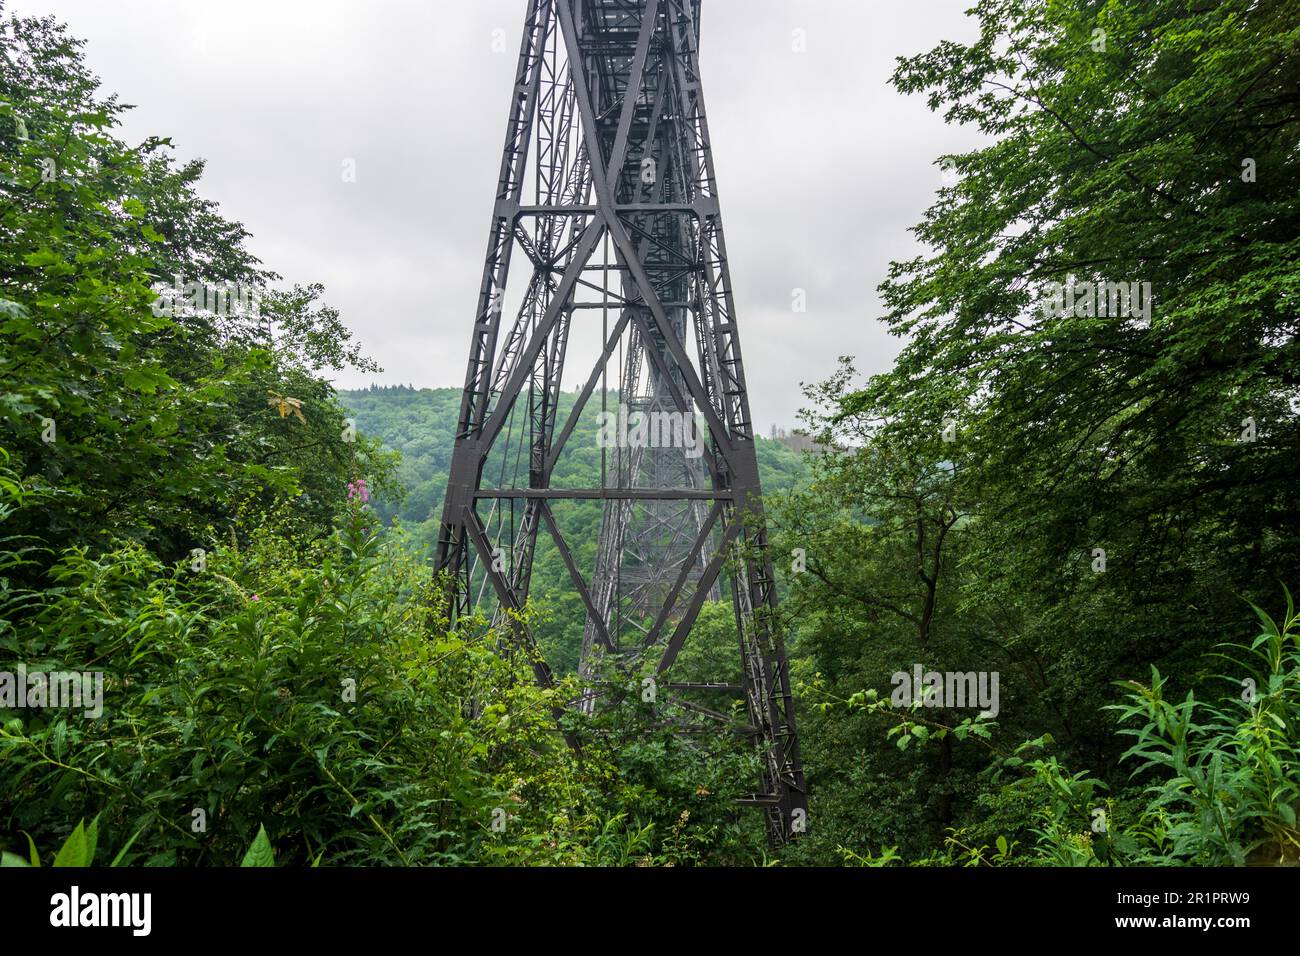 Solingen, Müngstener Brücke (Müngsten Bridge) in Bergisches Land, North Rhine-Westphalia, Germany Stock Photo